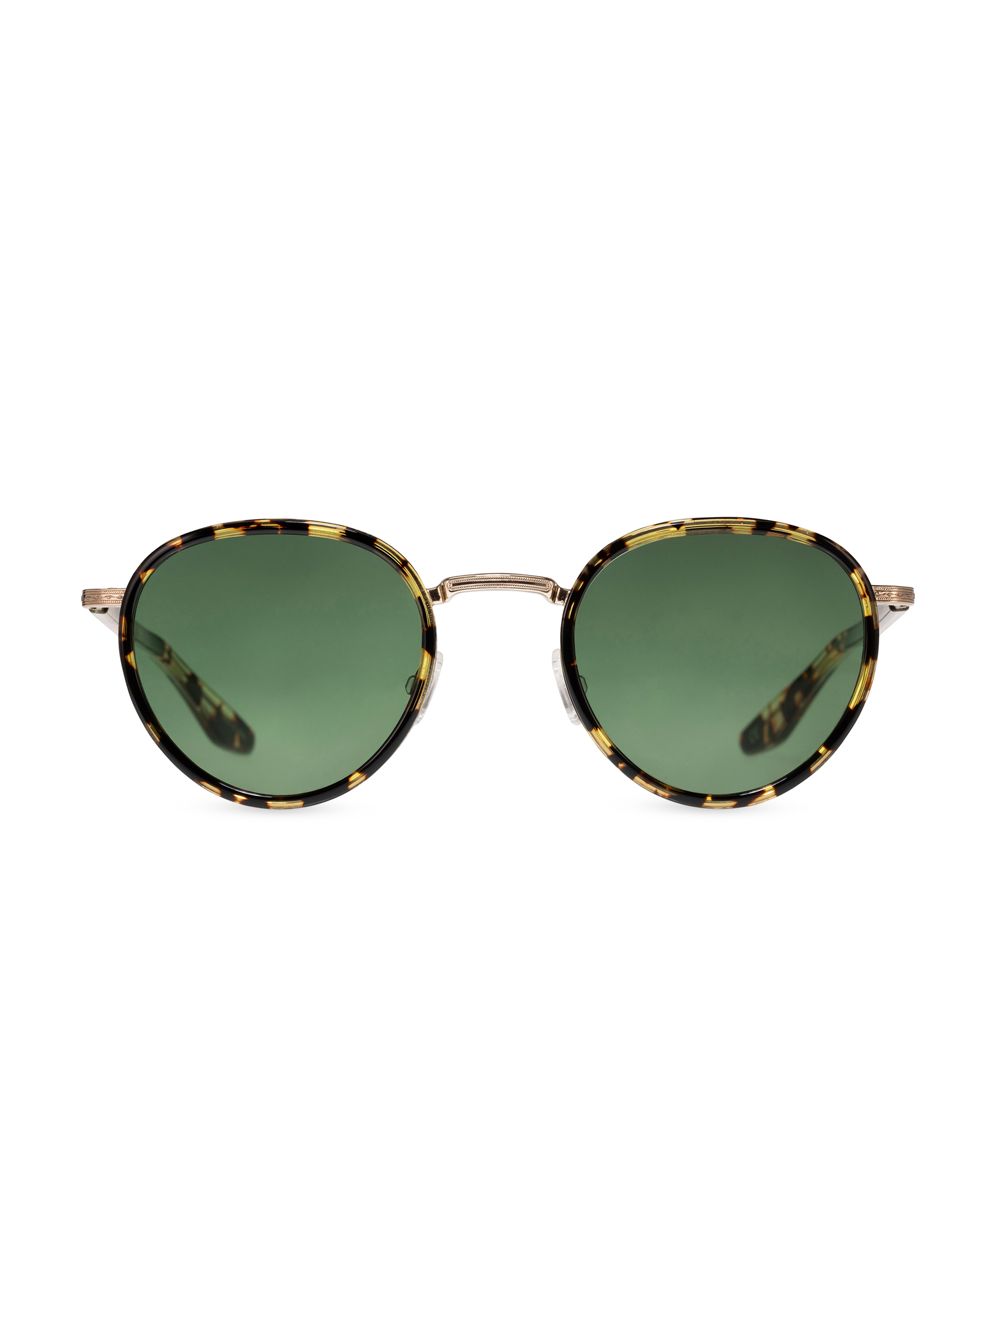 Круглые солнцезащитные очки Echelon 48 мм Barton Perreira, зеленый солнцезащитные очки barton perreira x teddy vonranson 55mm barton perreira